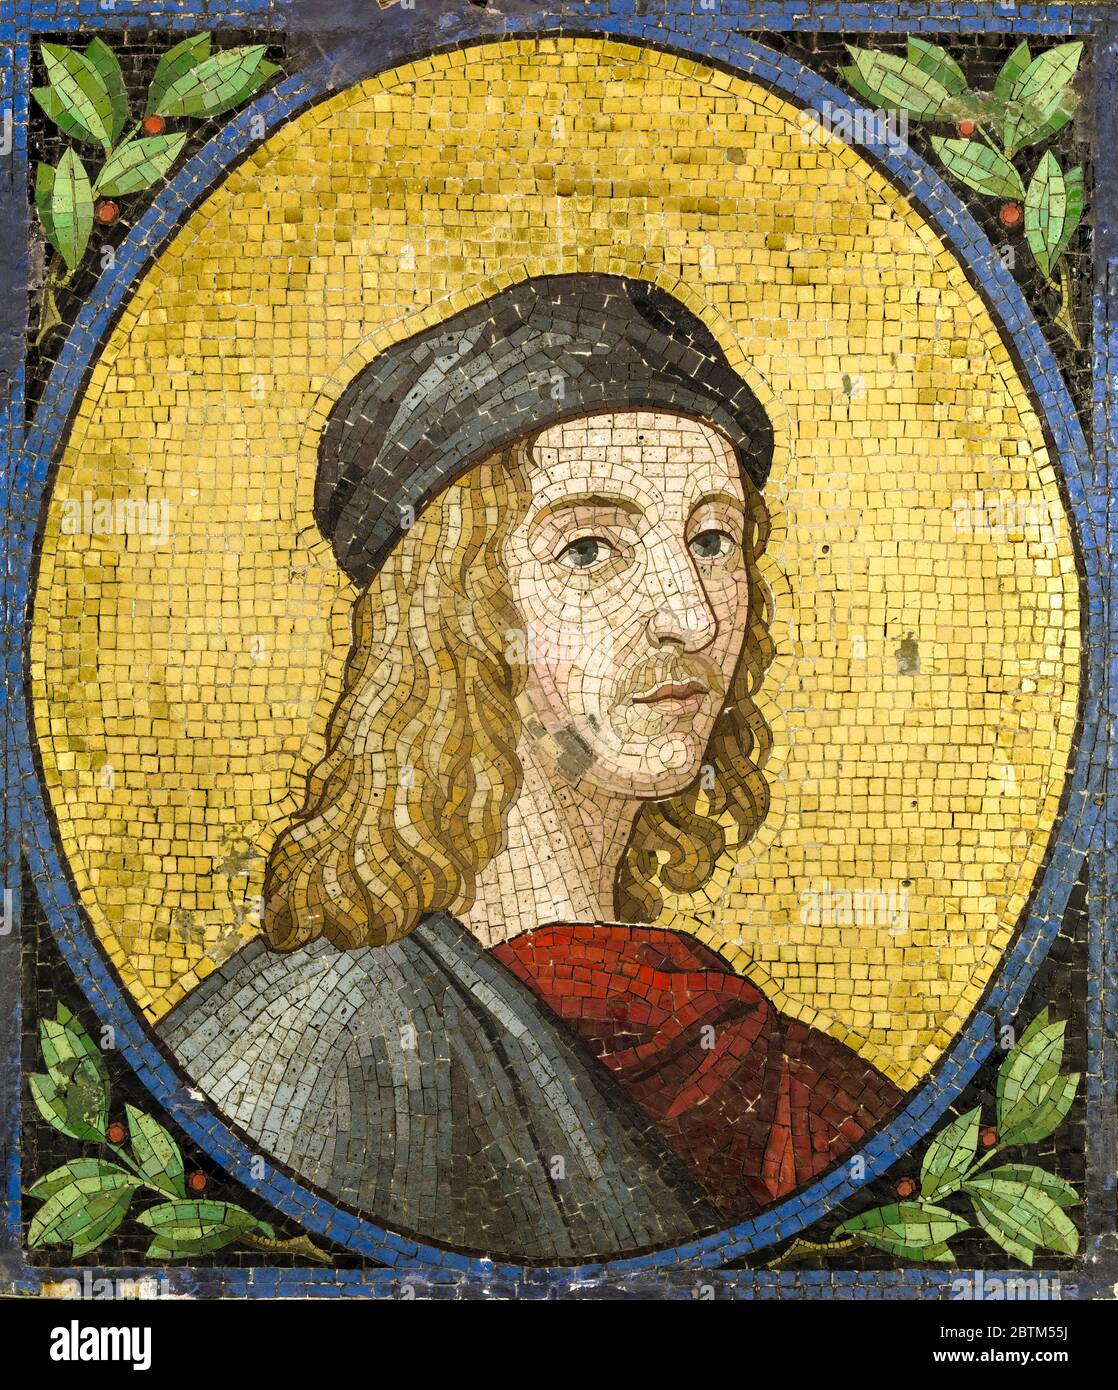 Rafaello Sanzio da Urbino, Raphael (1483-1520), italienischer Maler und Architekt, Porträtmosaik, undatiert, möglicherweise 19. Oder 20. Jahrhundert Stockfoto